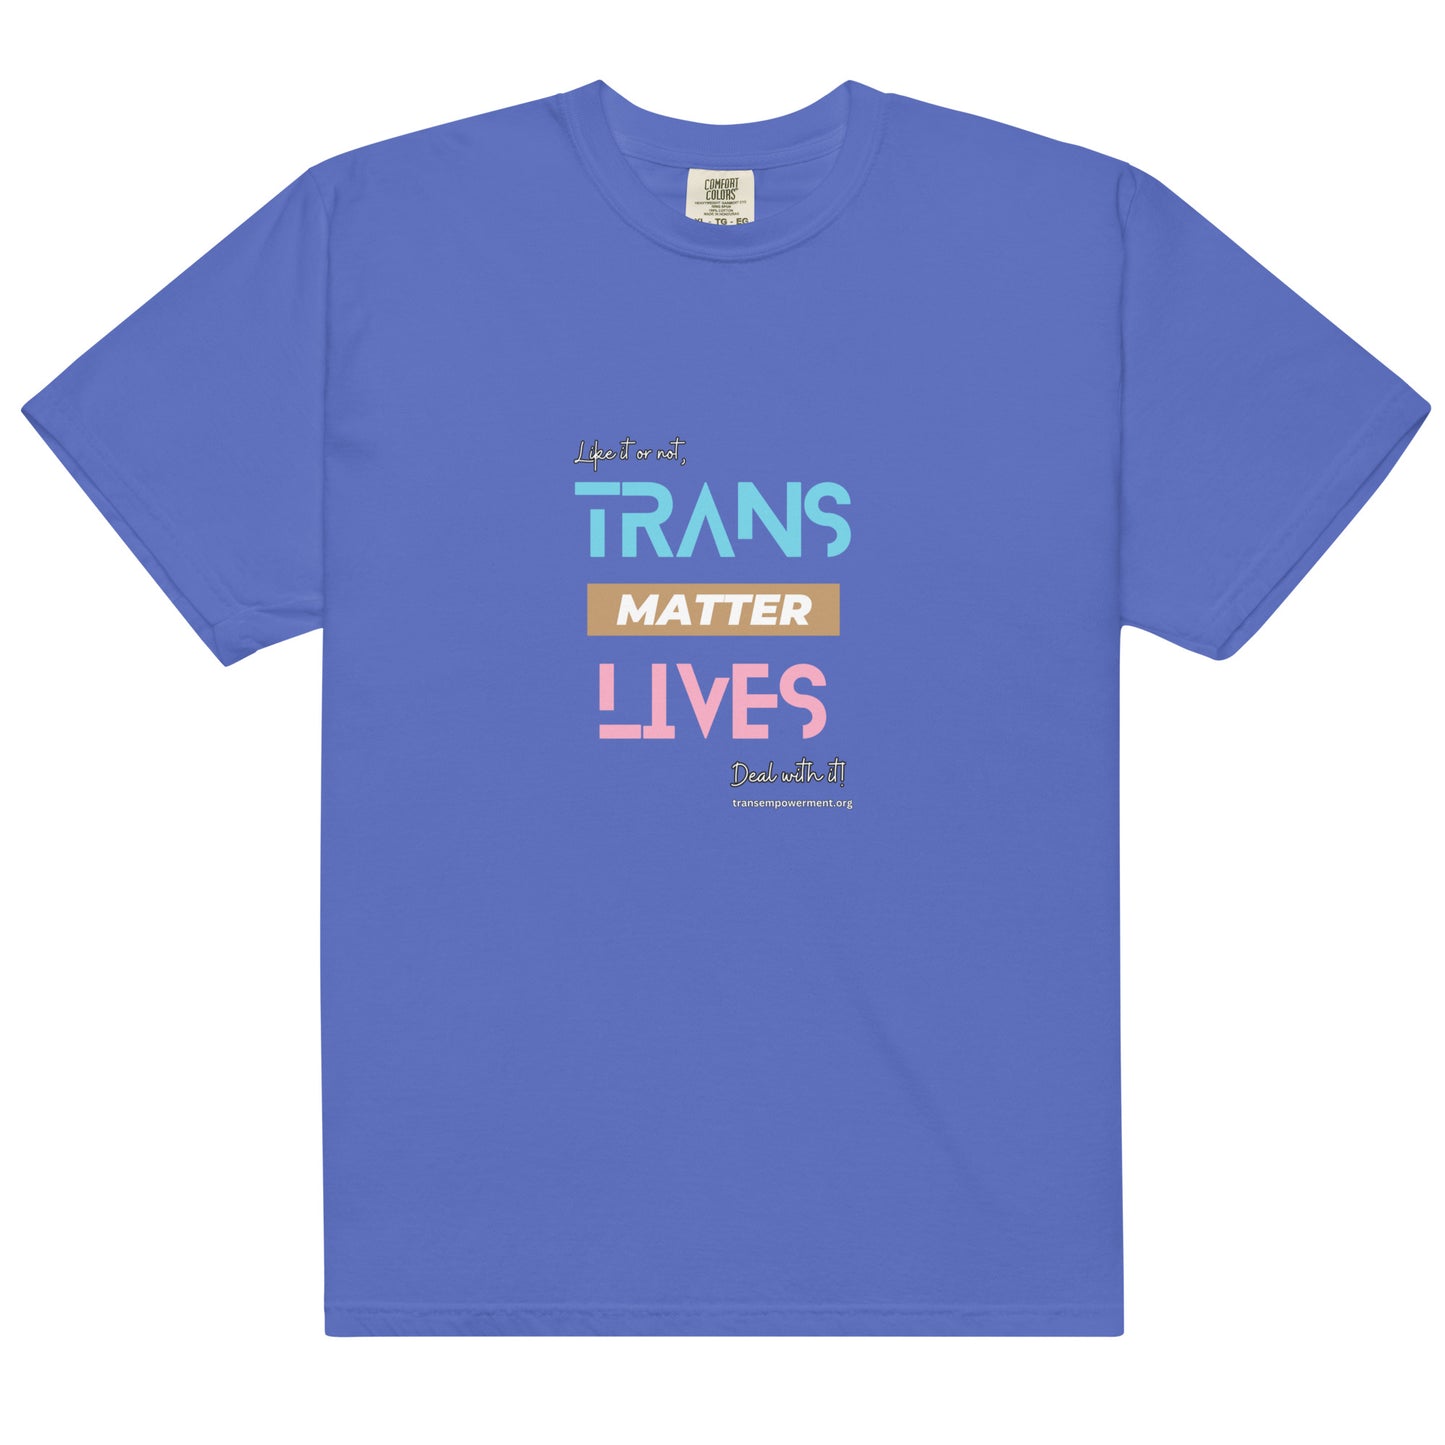 Trans Lives Matter, Deal with it! - Men’s garment-dyed heavyweight t-shirt